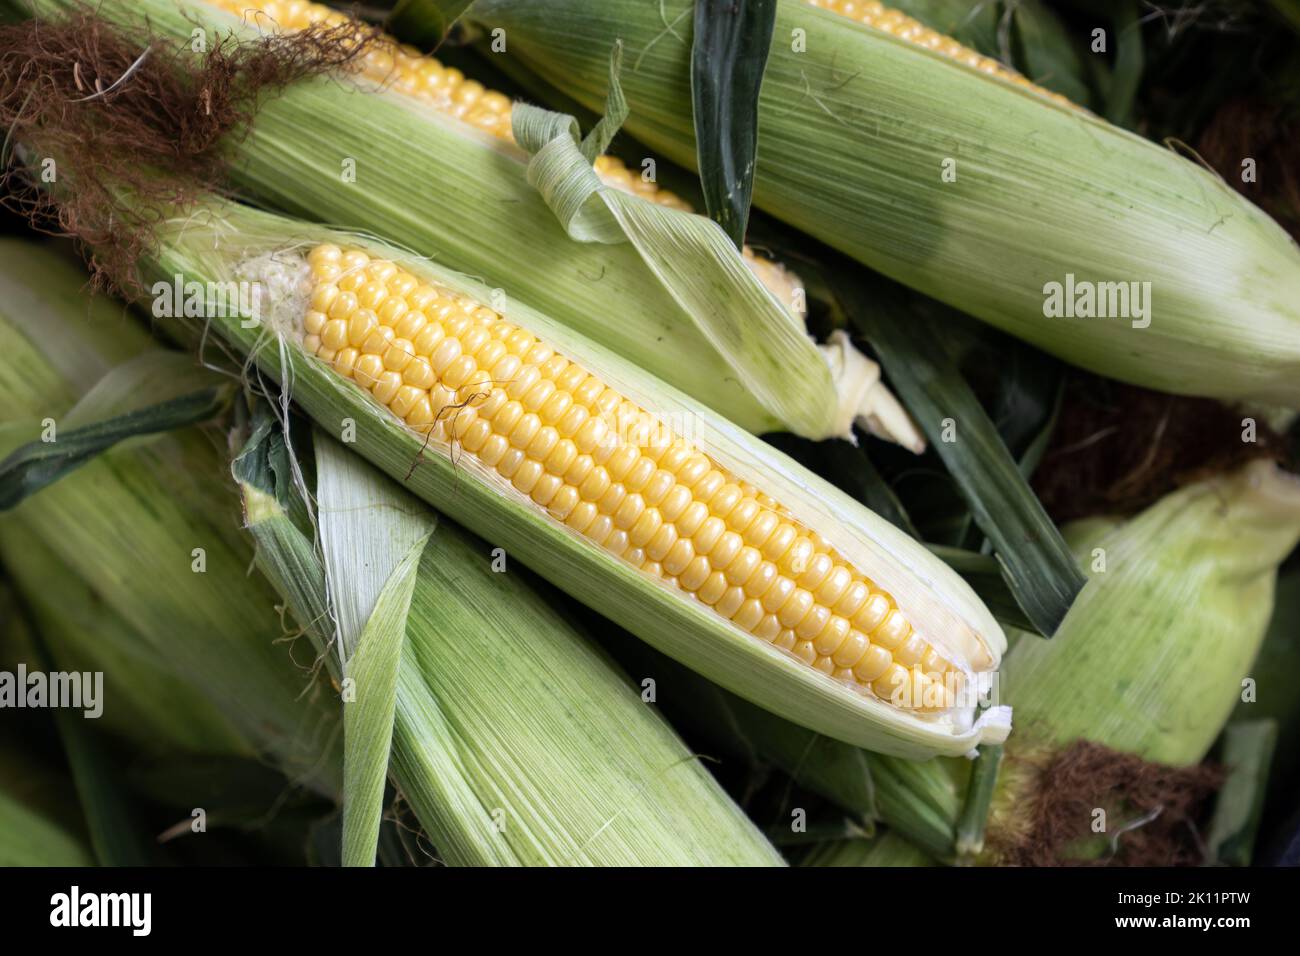 Ears of freshly harvested yellow sweet corn Stock Photo